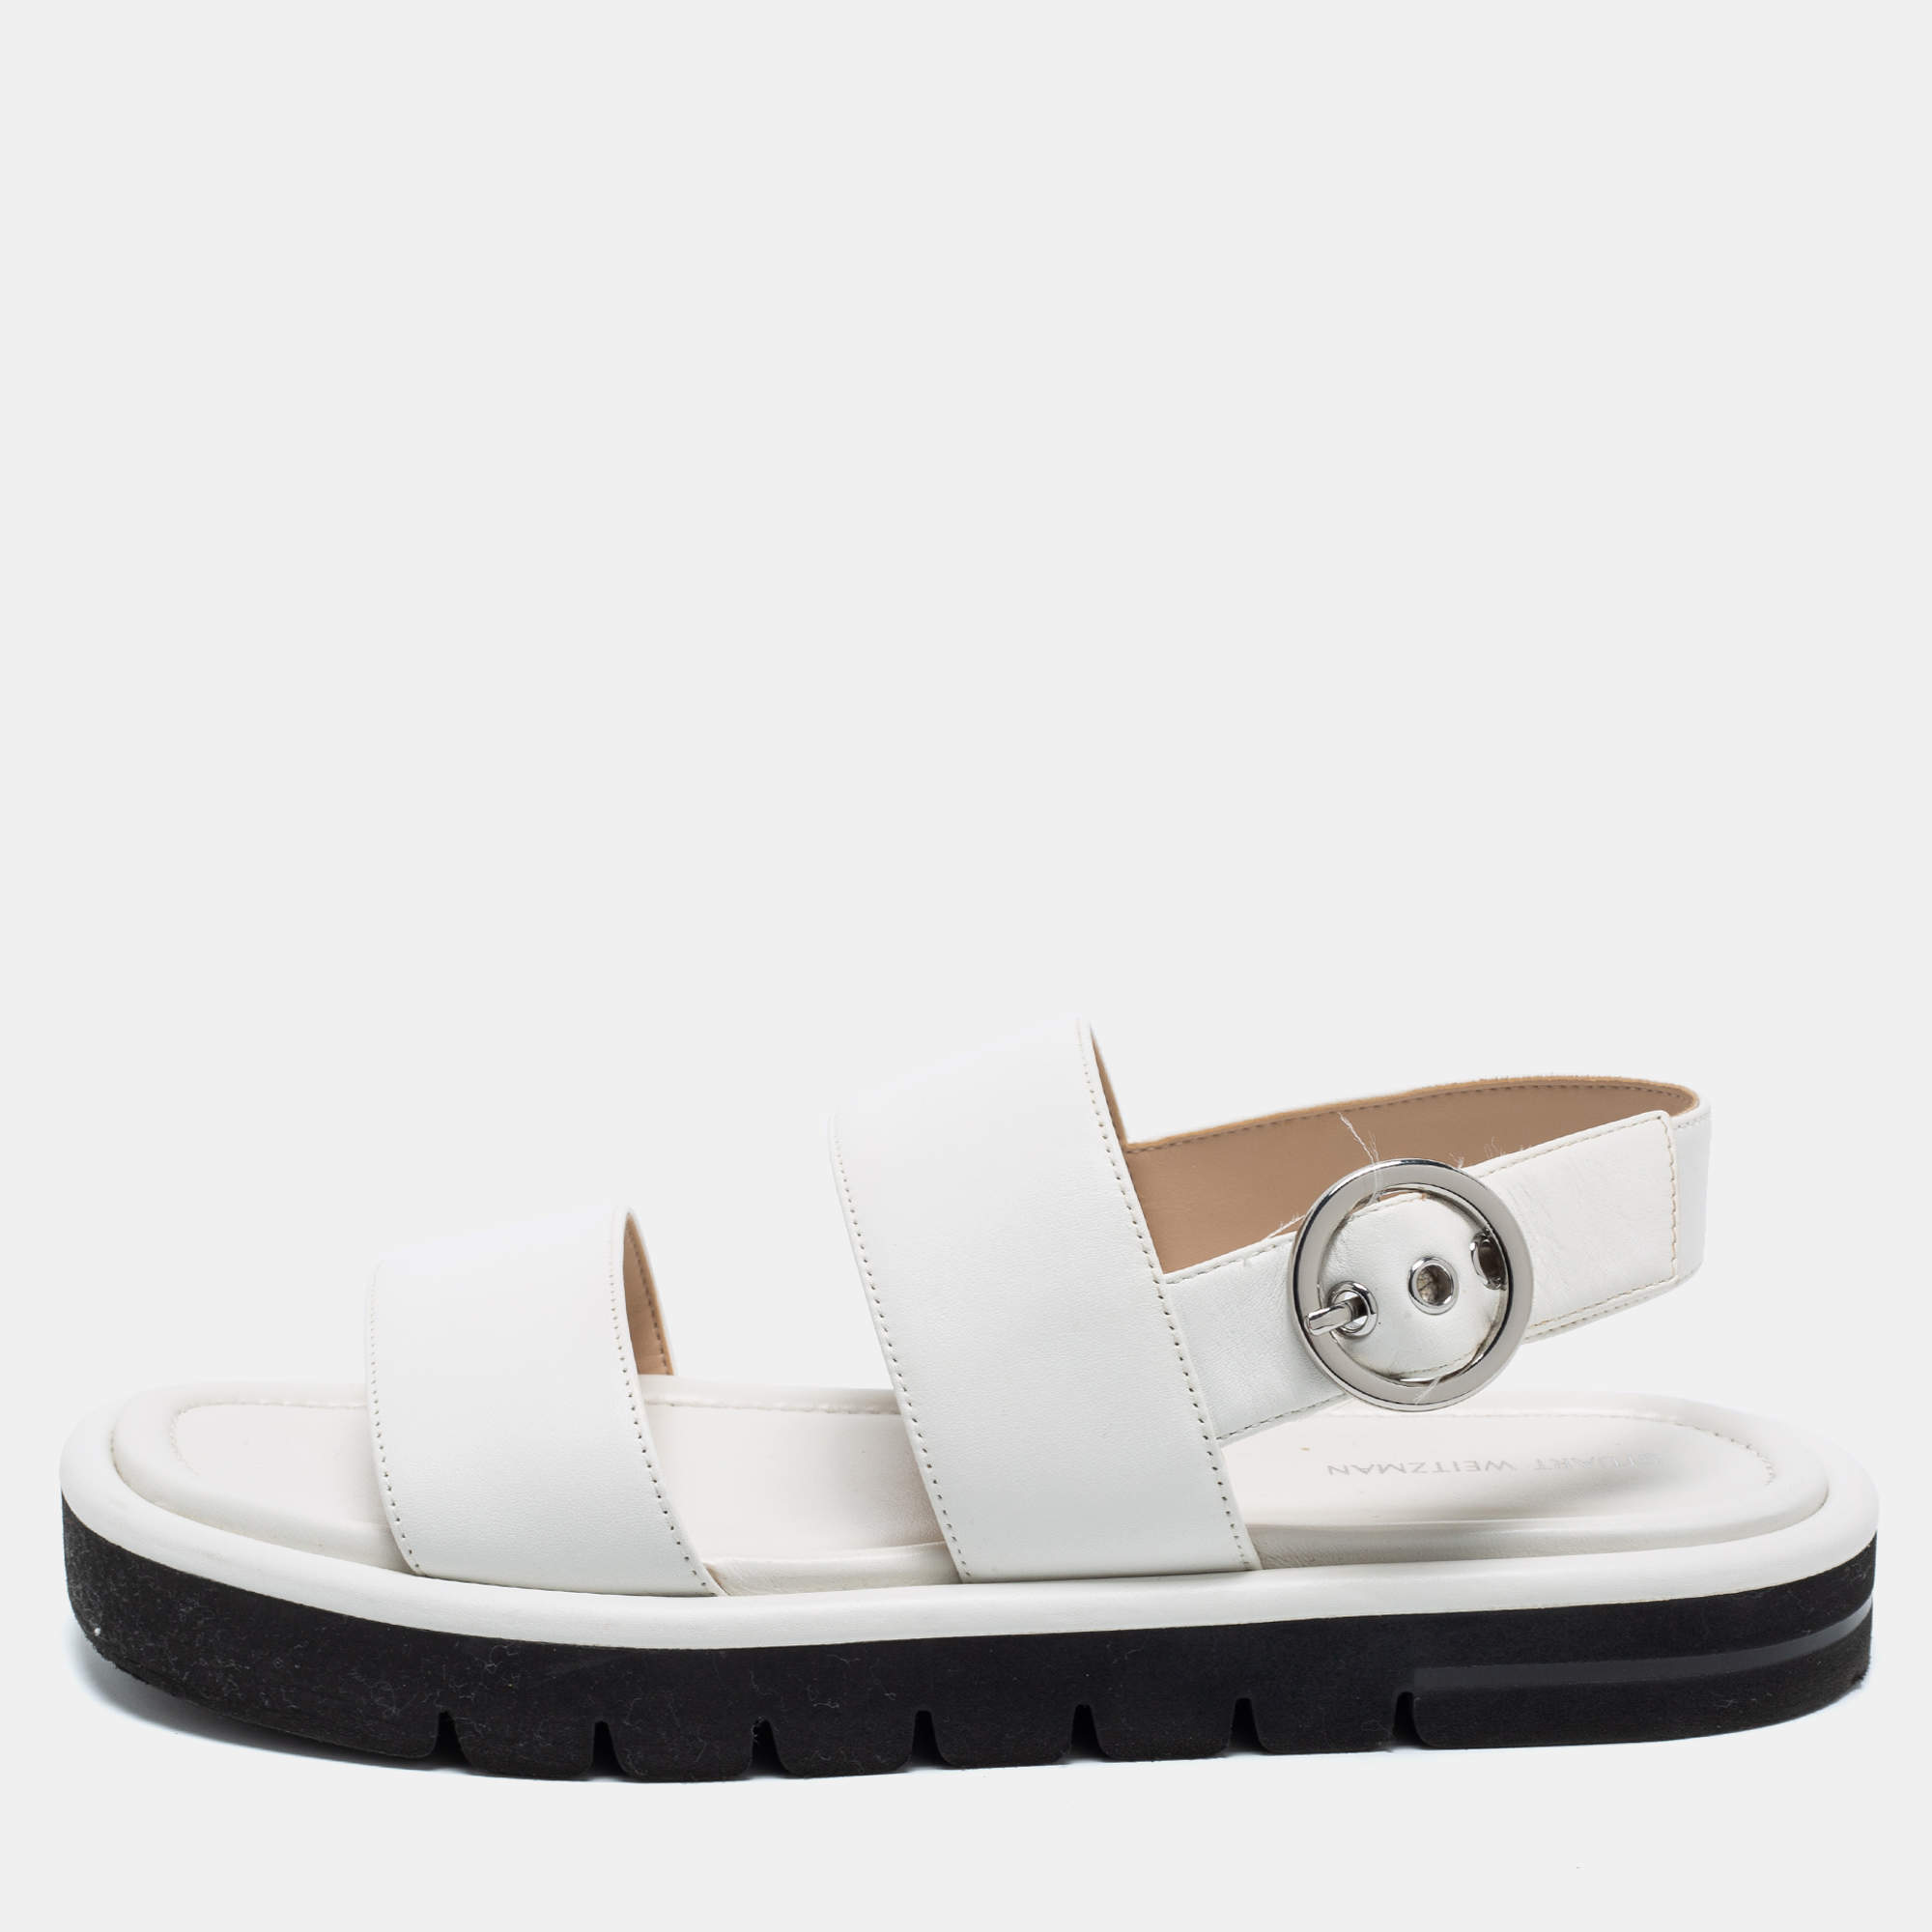 Stuart Weitzman White Leather Flat Slingback Sandals Size 39.5